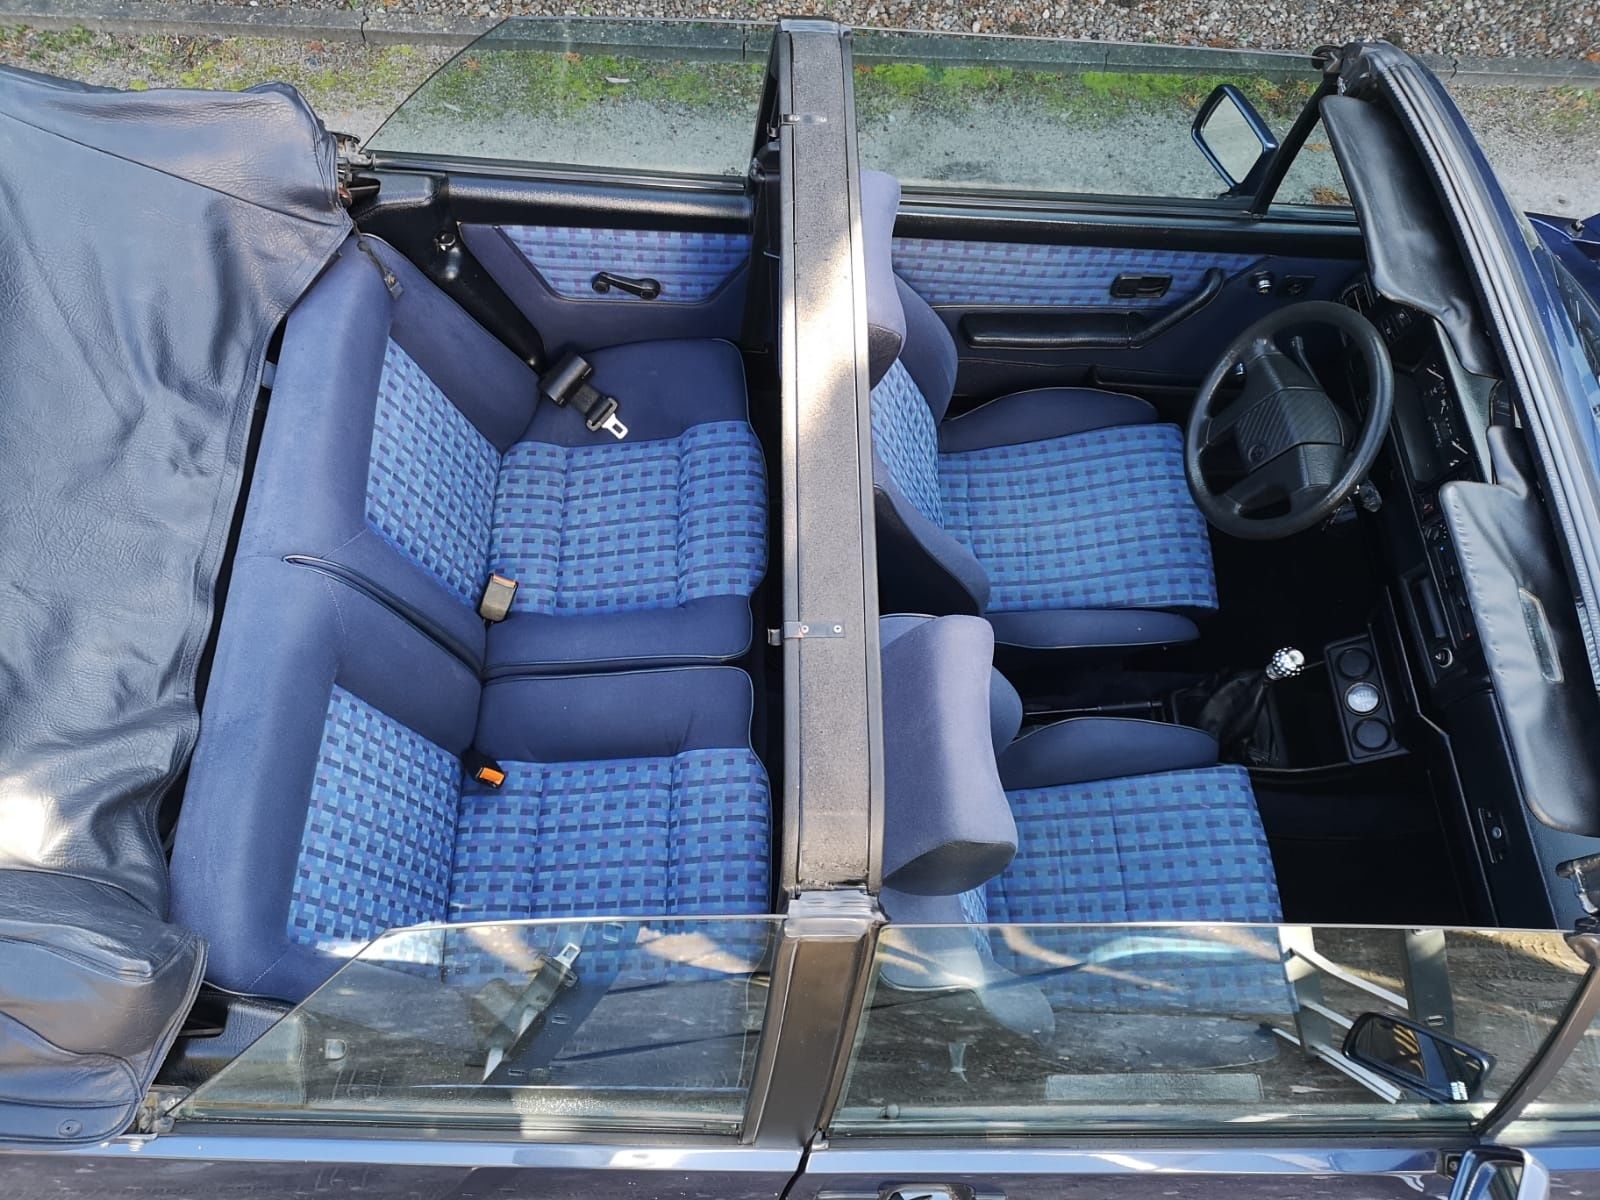 VW Golf MK1 Cabrio